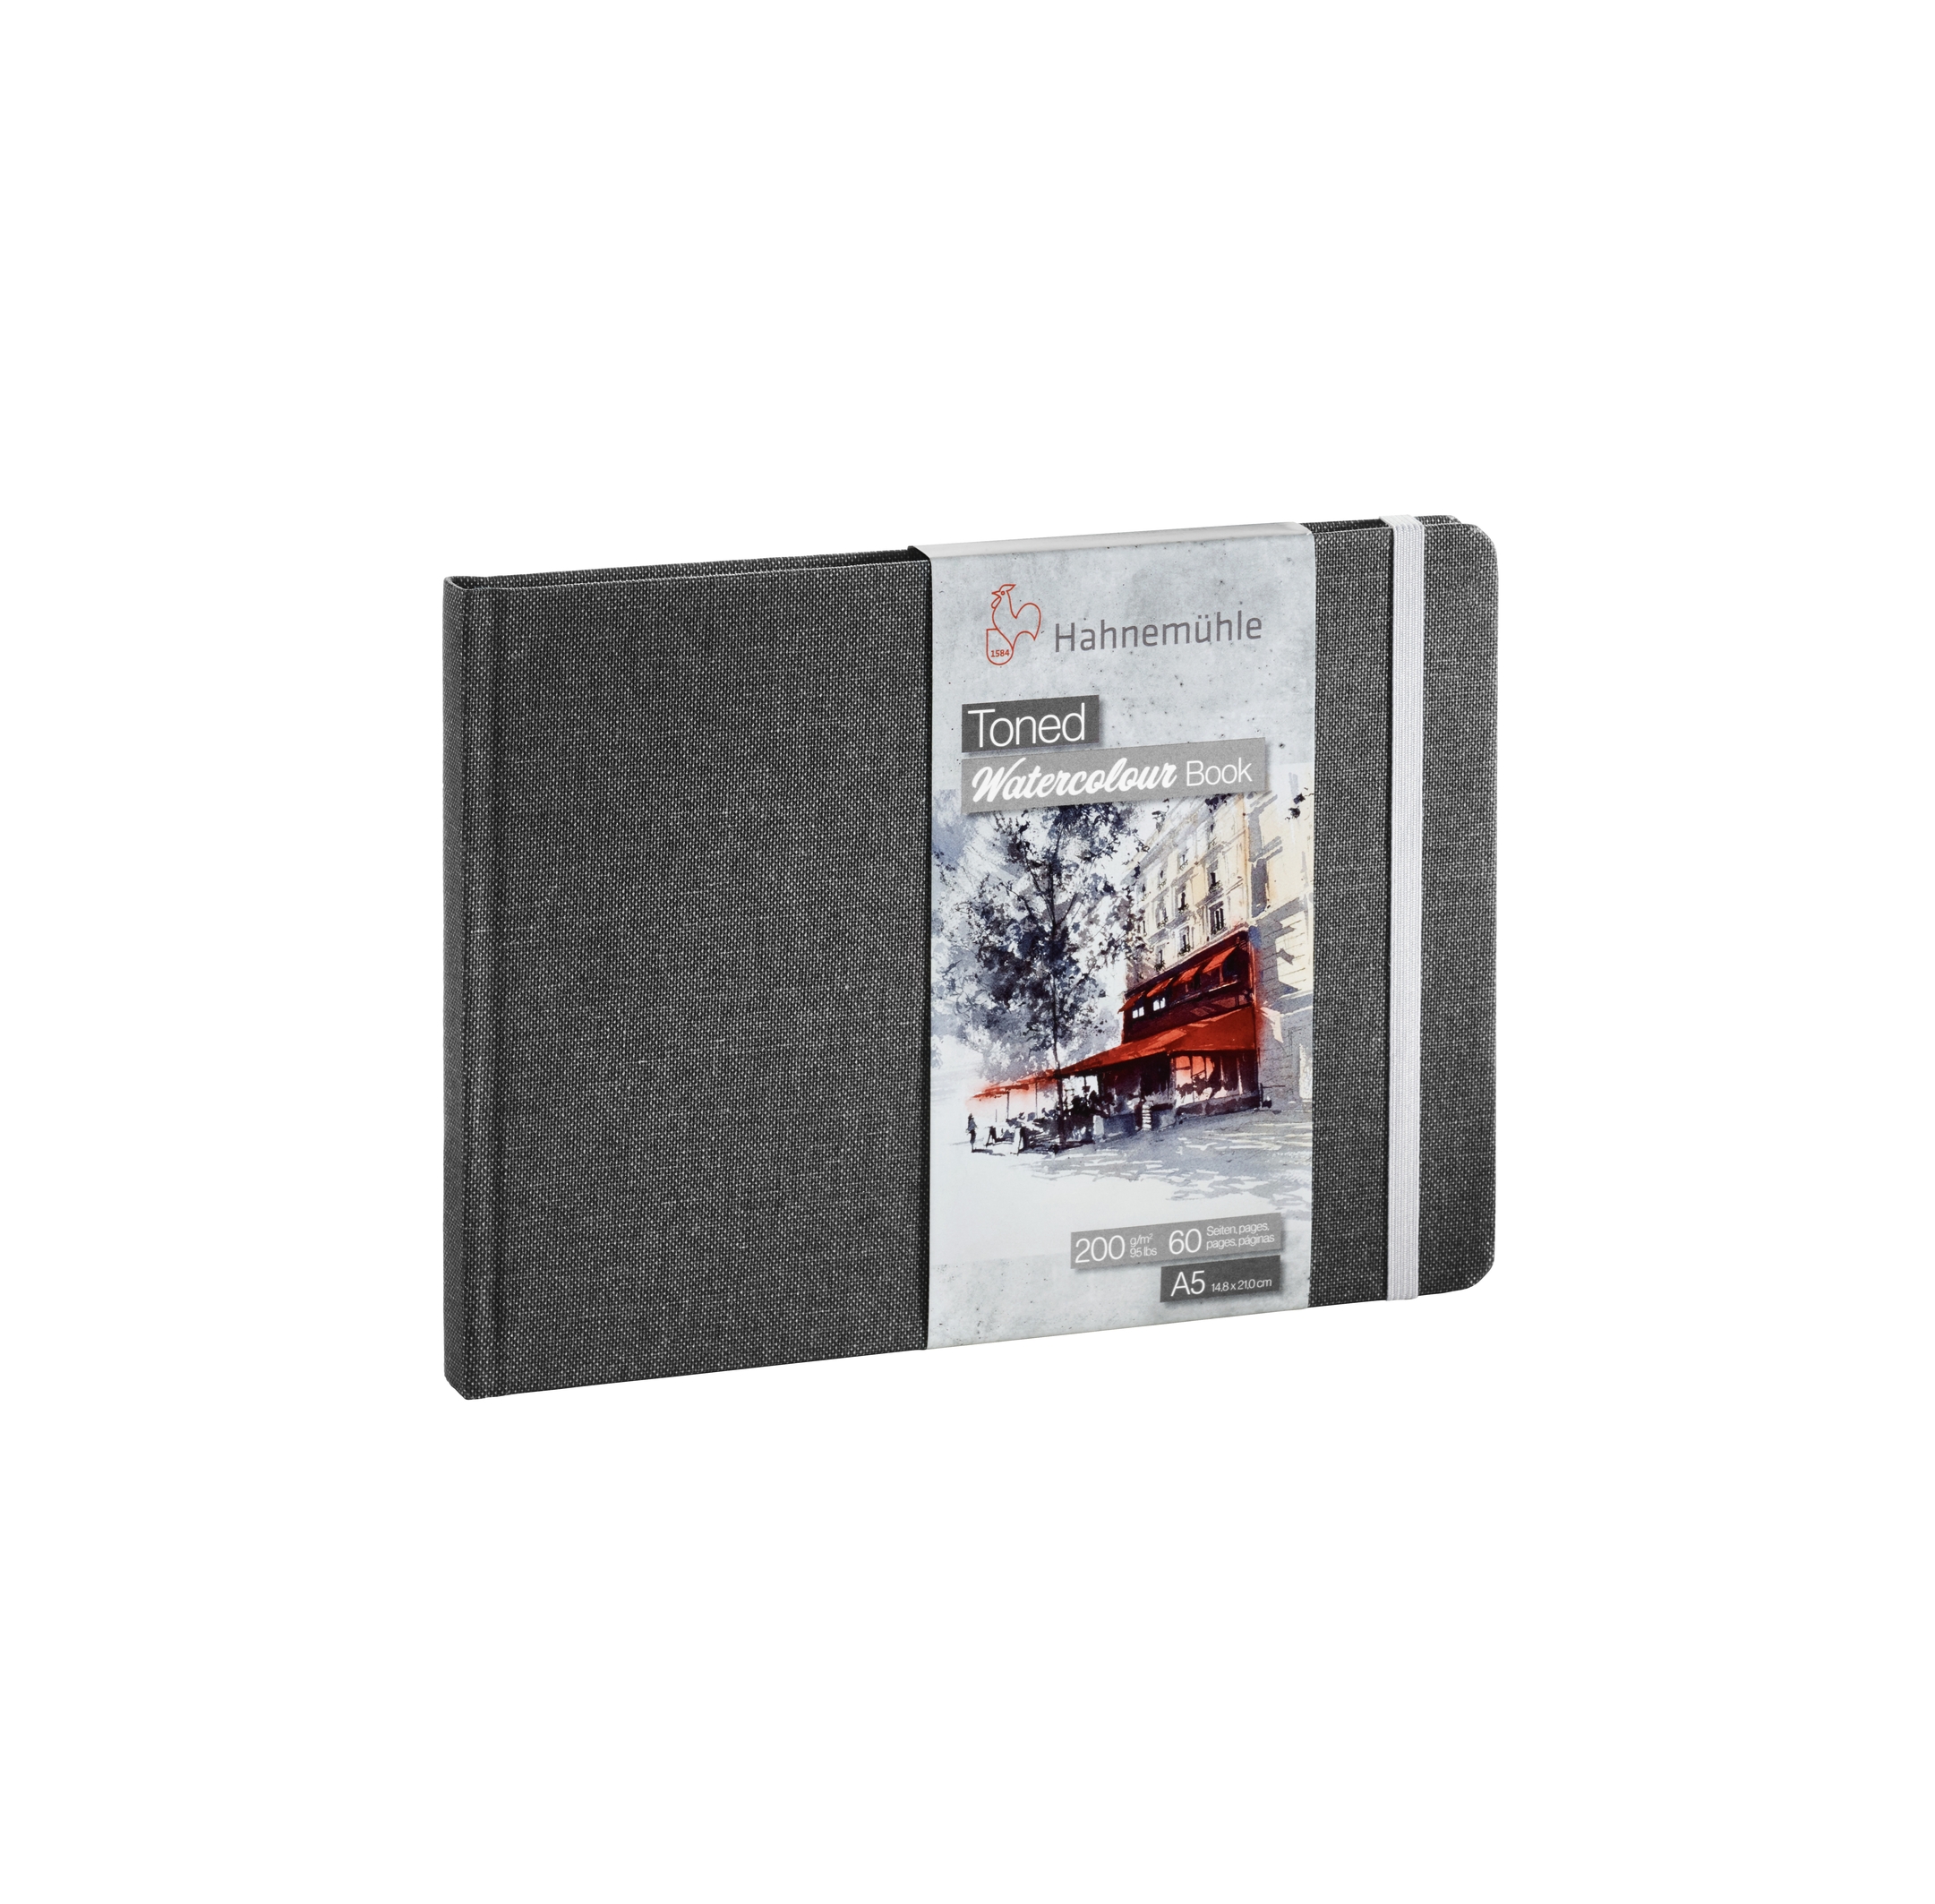 Альбом для акварели WATERCOLOUR BOOK 200г/м.кв (А5) 210х148мм 30л. склейка серый по 2 506.00 руб от Hahnemuhle